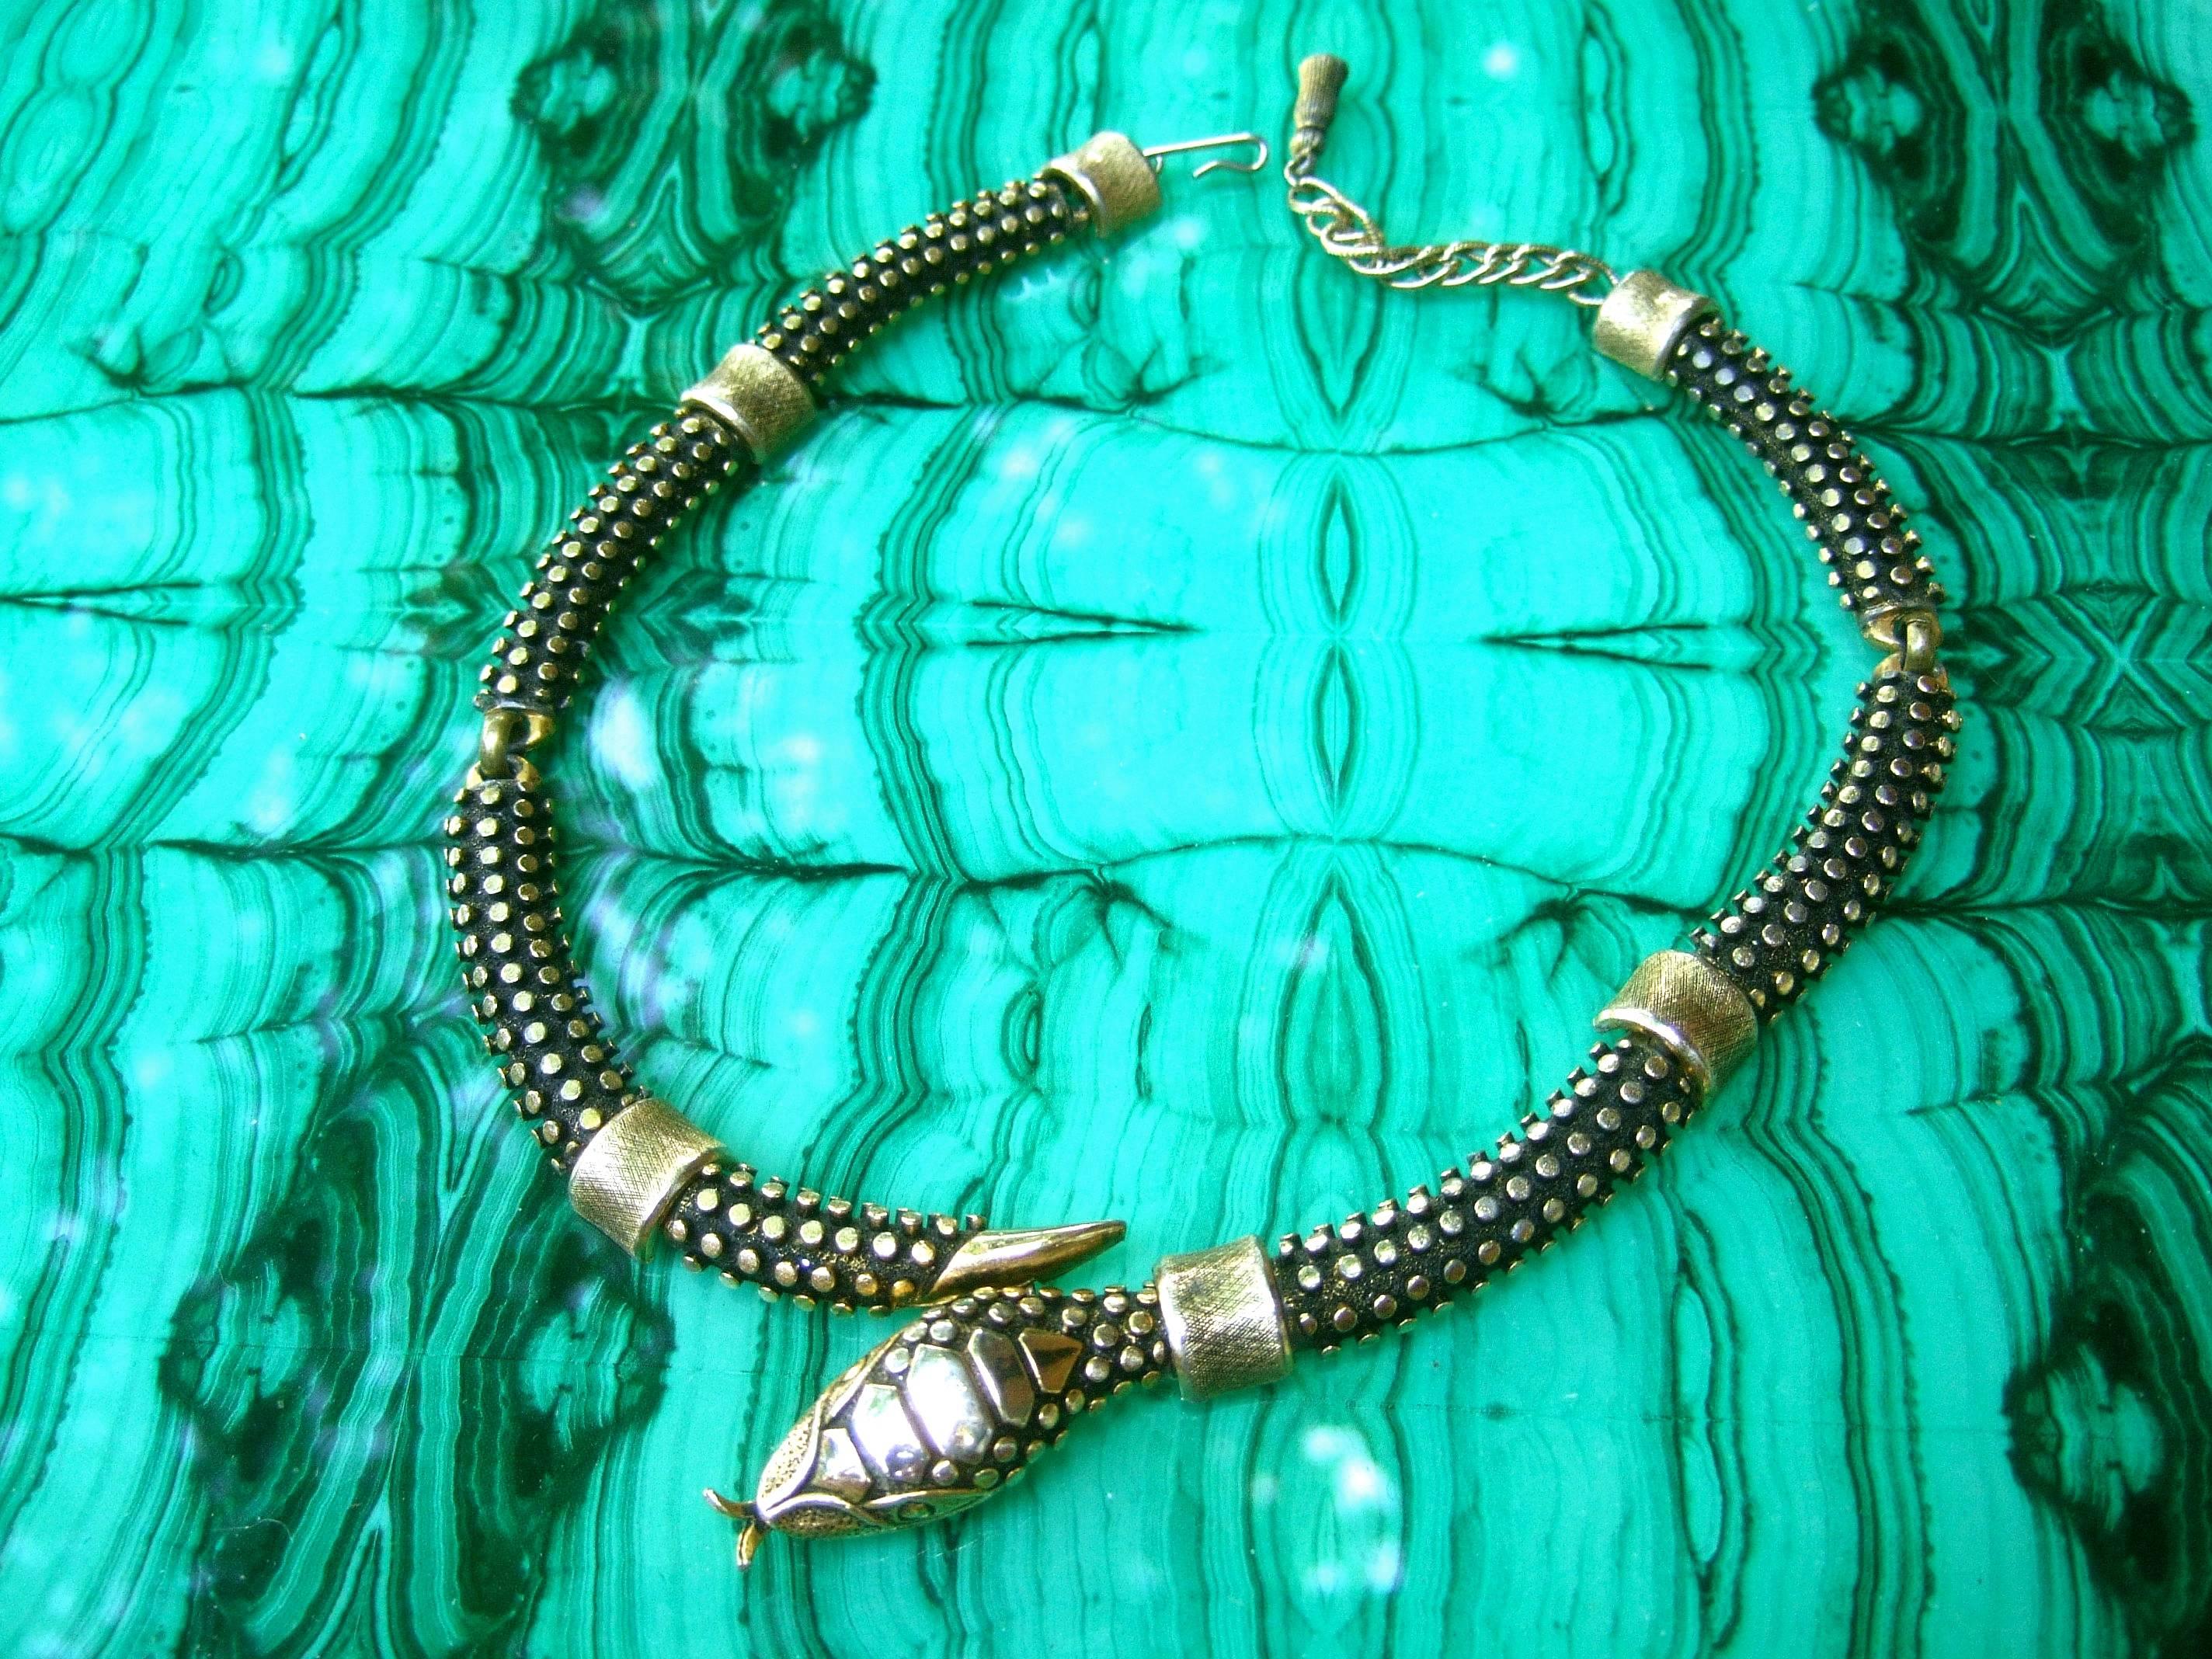 Women's RESERVED Avant Garde Gilt Metal Articulated Serpent Choker Necklace circa 1970